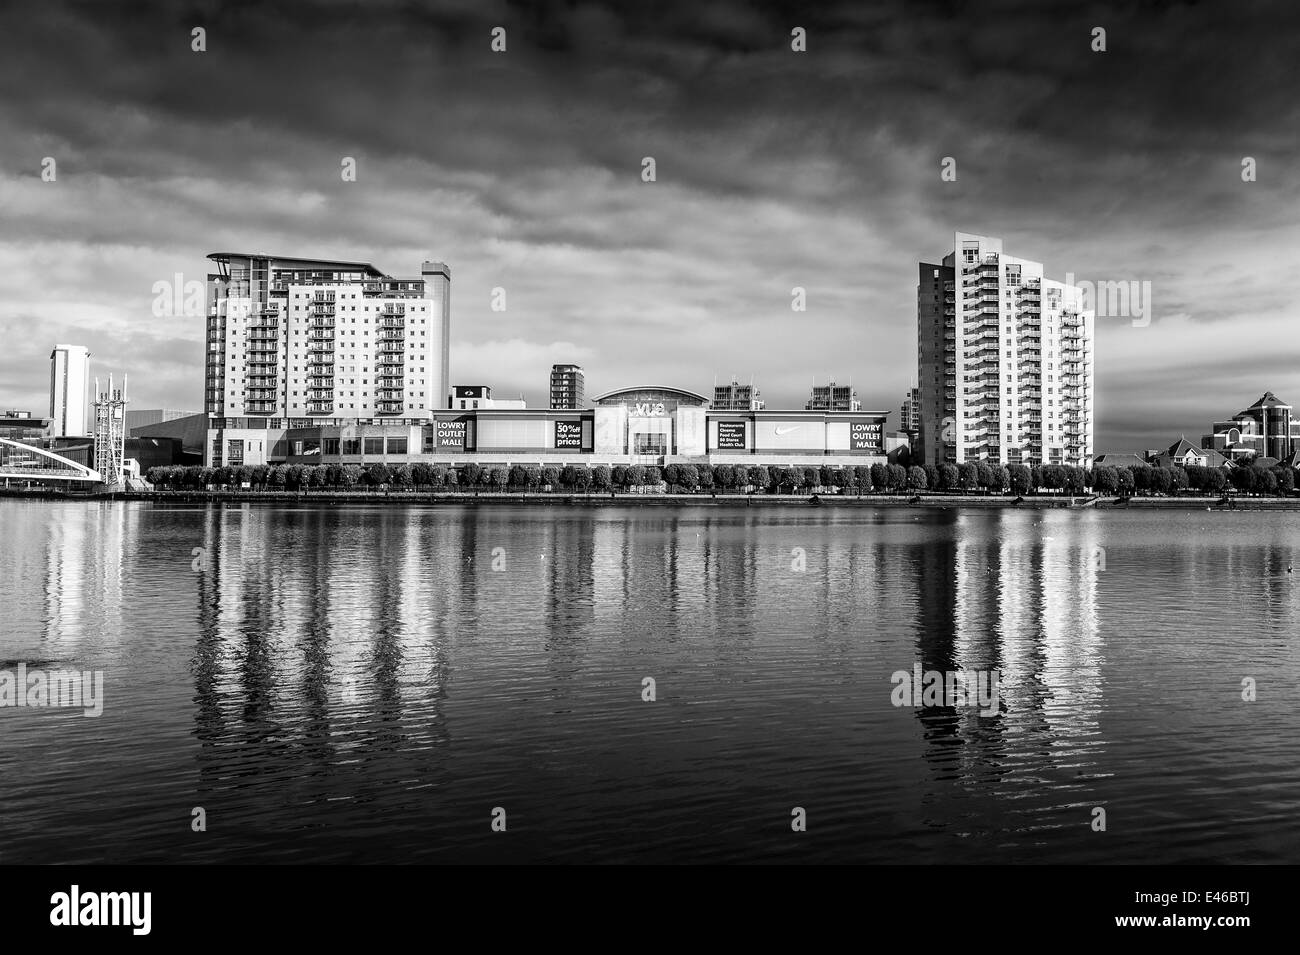 Schwarz / weiß Foto, Blick über Manchester Schiff Kanal von Lowry Outlet Malleinkaufen, Zentrum, Salford Quays, Manchester Stockfoto